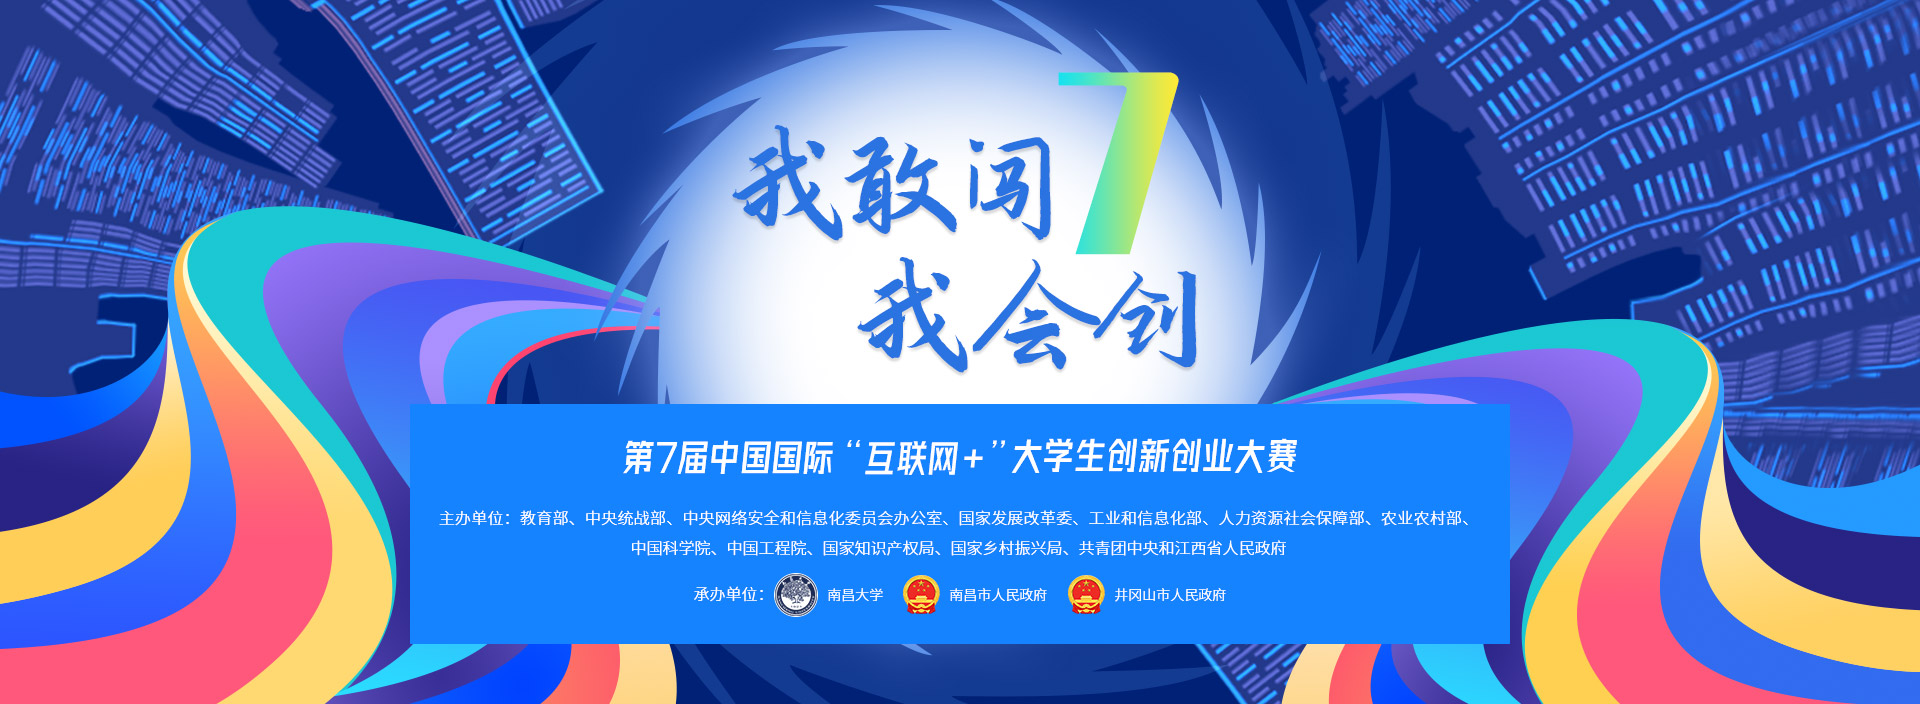 关于征集第七届中国国际“互联网+”大学生创新创业大赛专家的通知